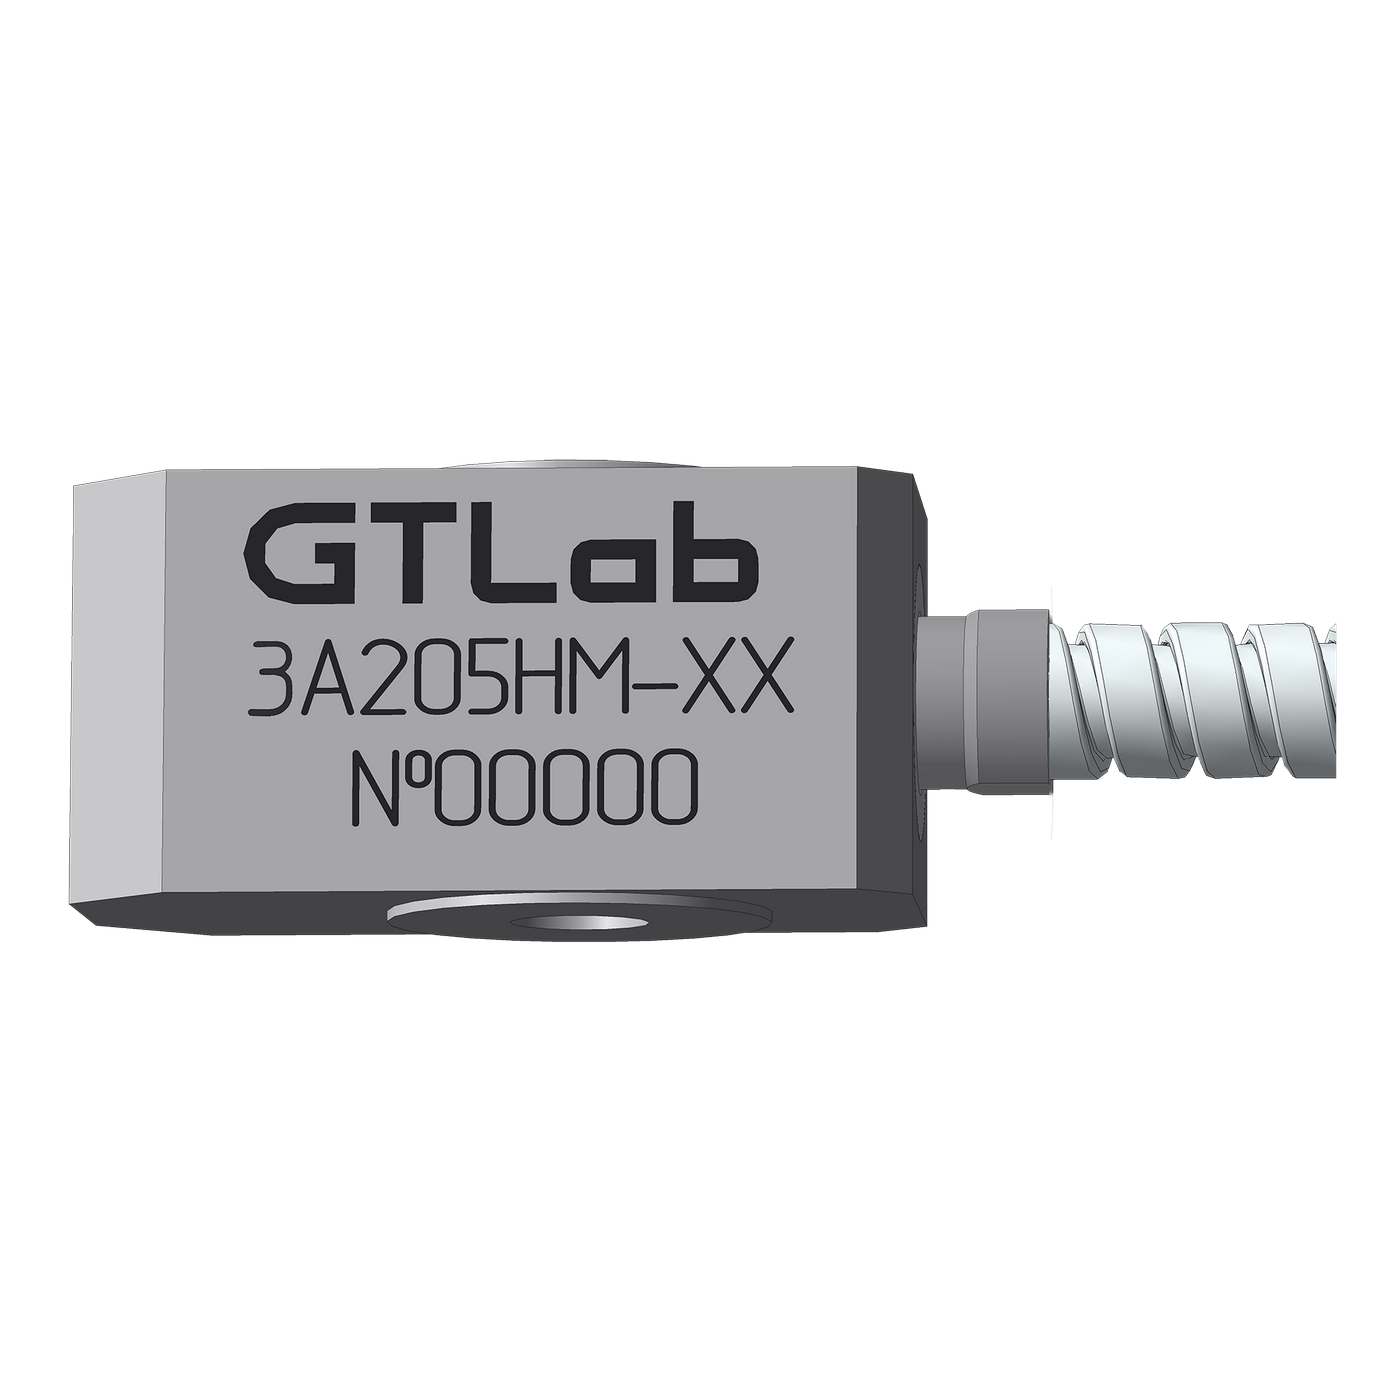 Датчик виброперемещения с токовым выходом промышленный GTLAB 3A205HM-160 Дозиметры